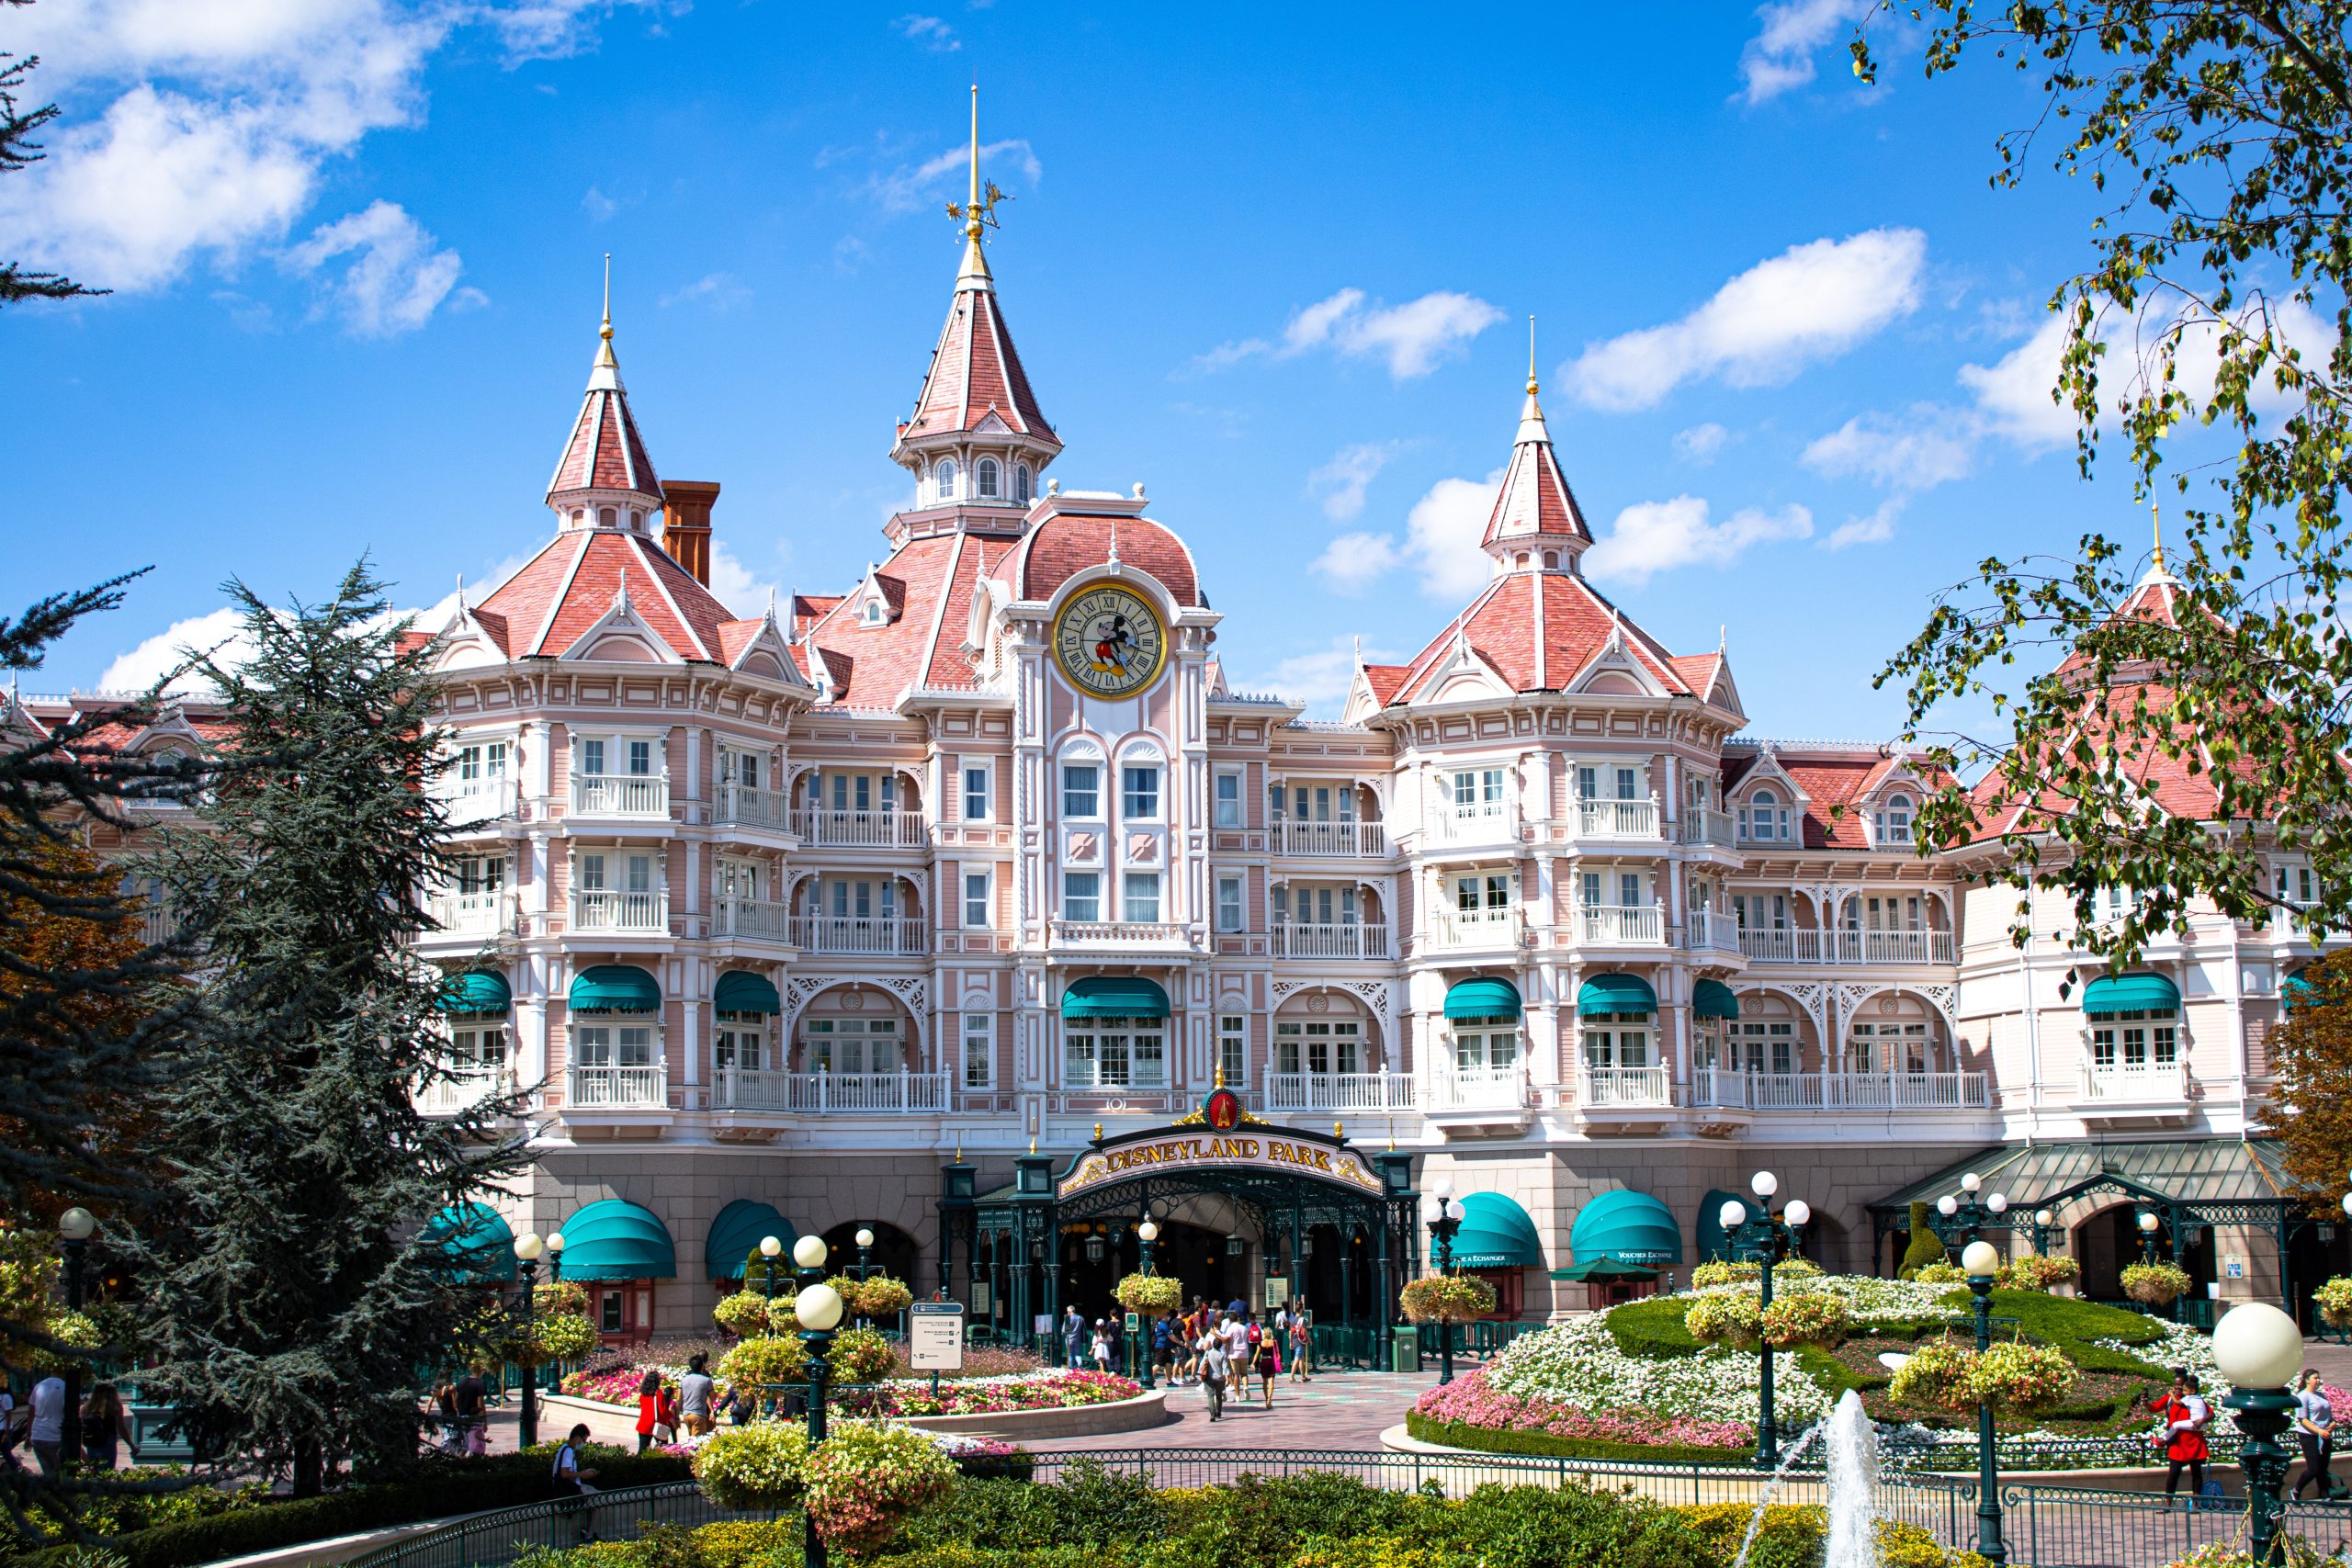 Ontdek Disneyland Parijs: 5 handige tips voor een magische ervaring